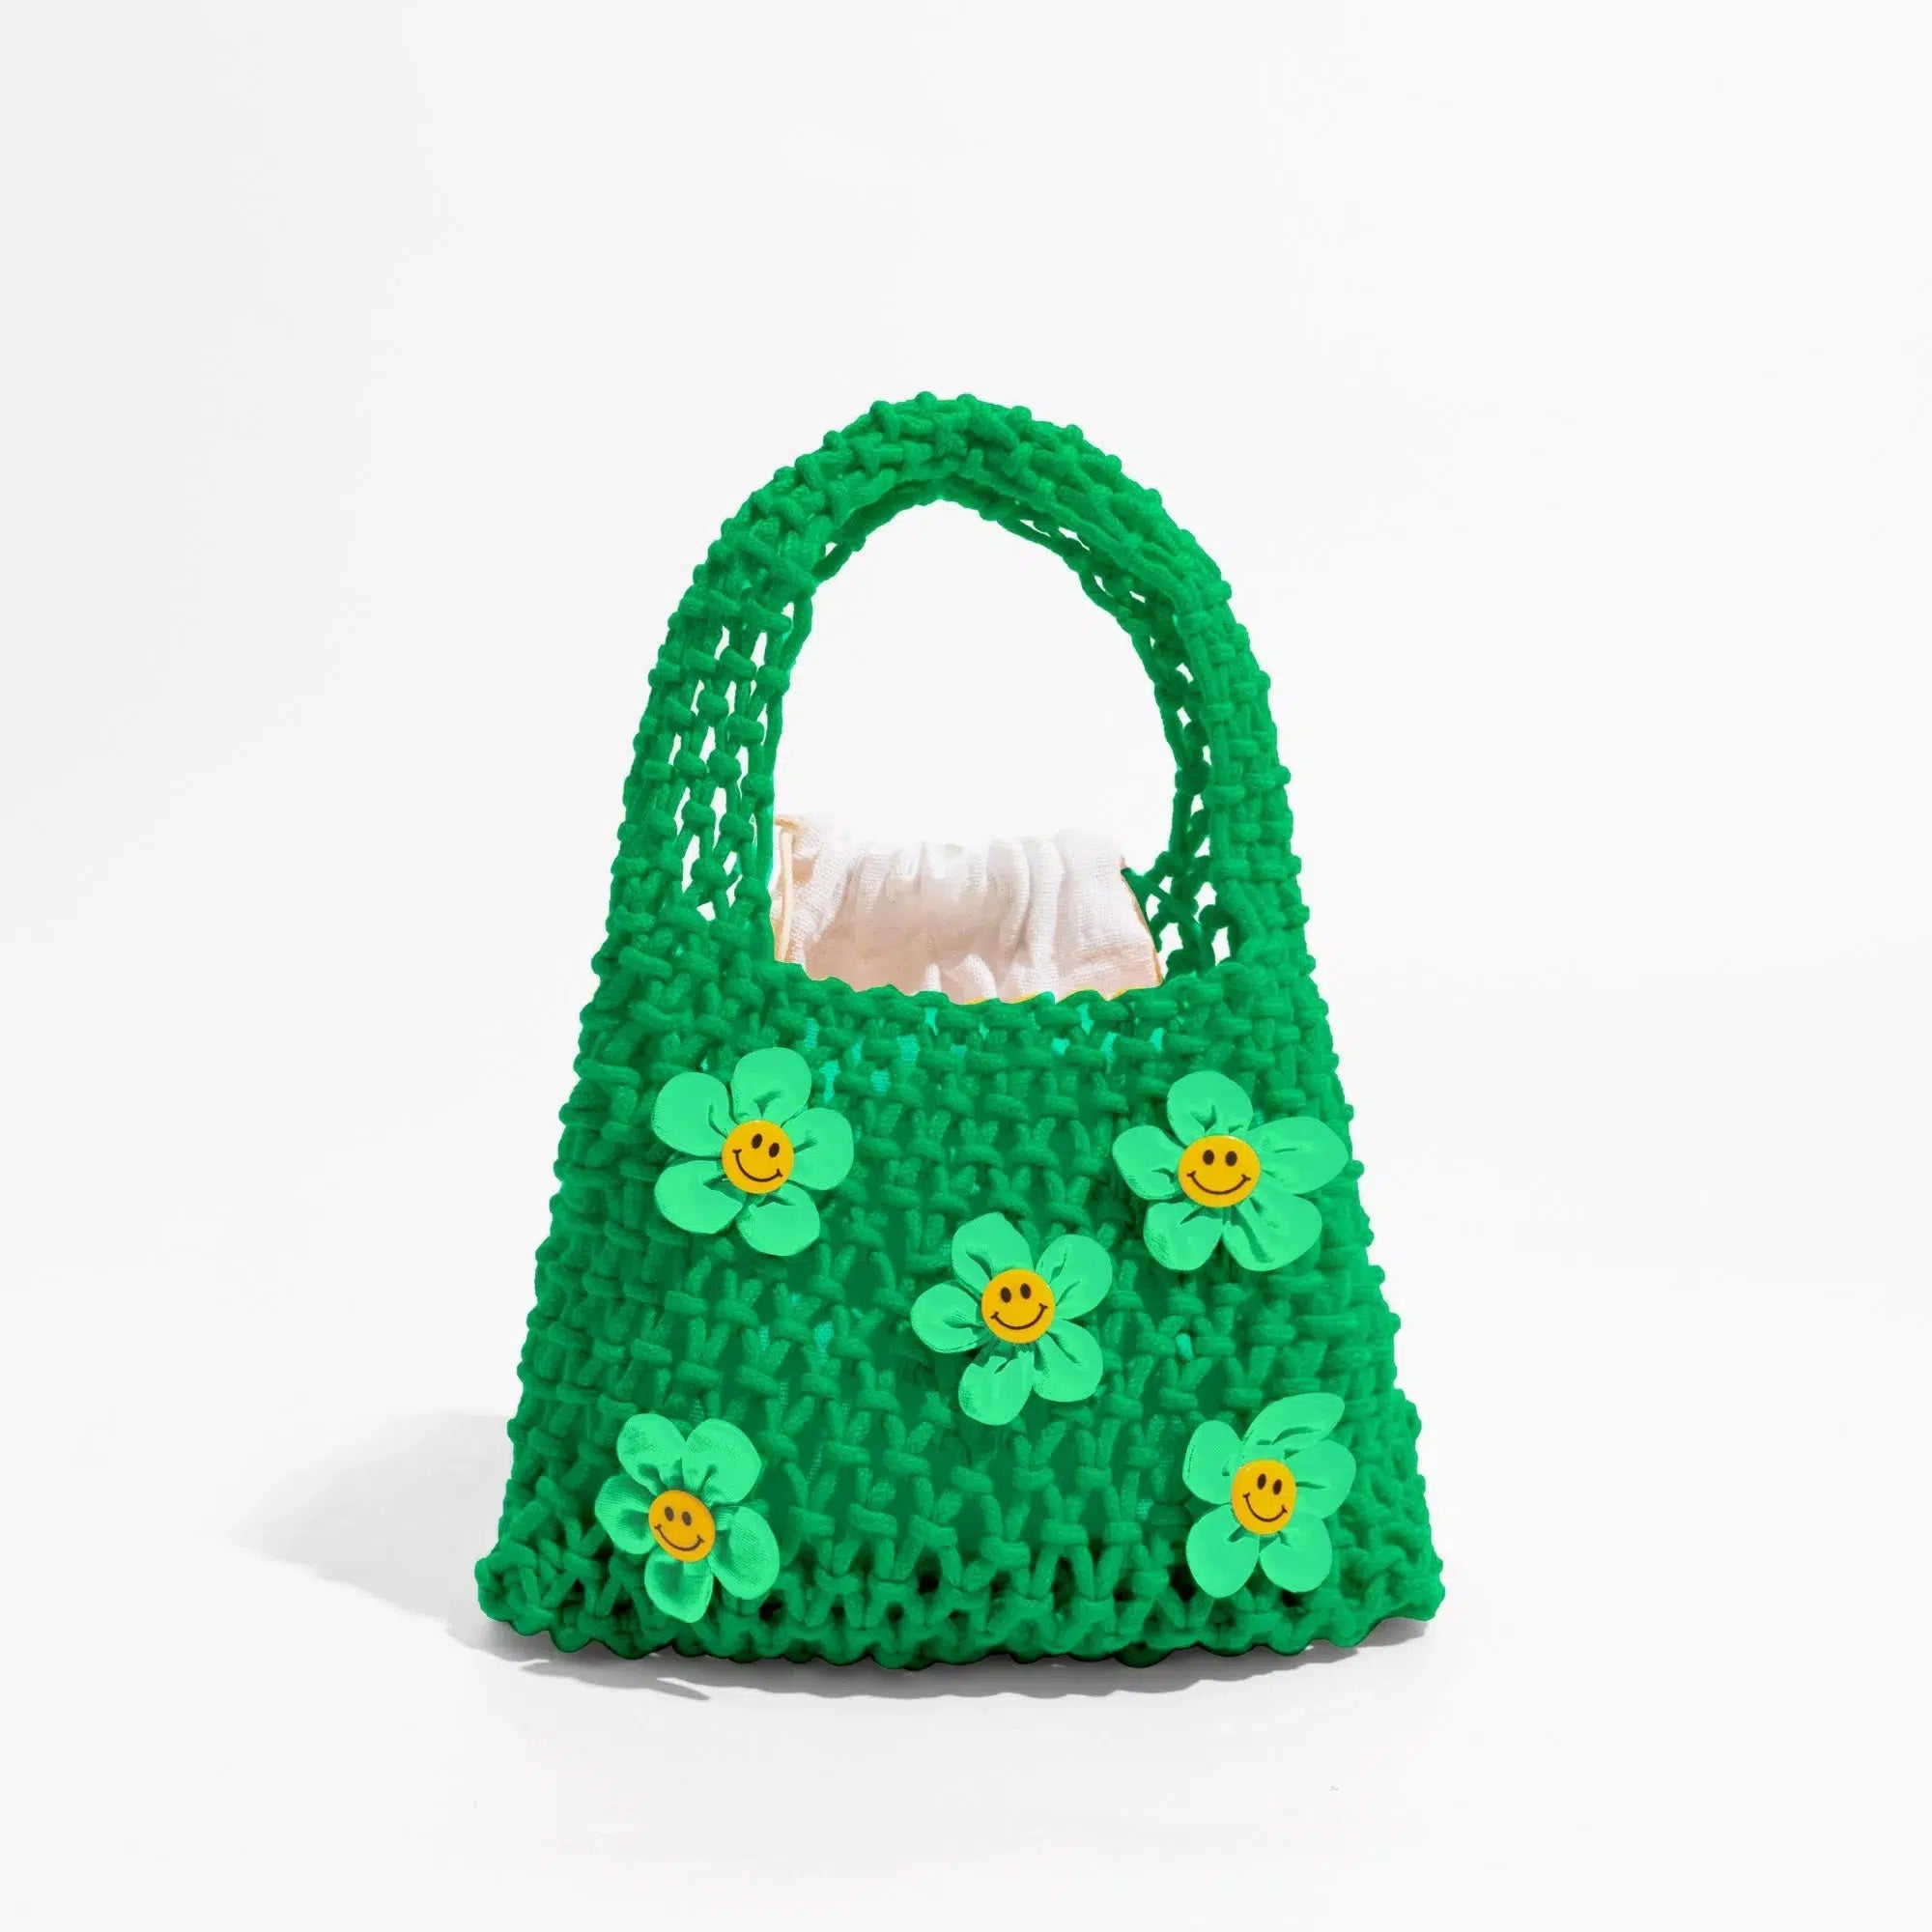 Indie Smiley Flowers Crochet Bag